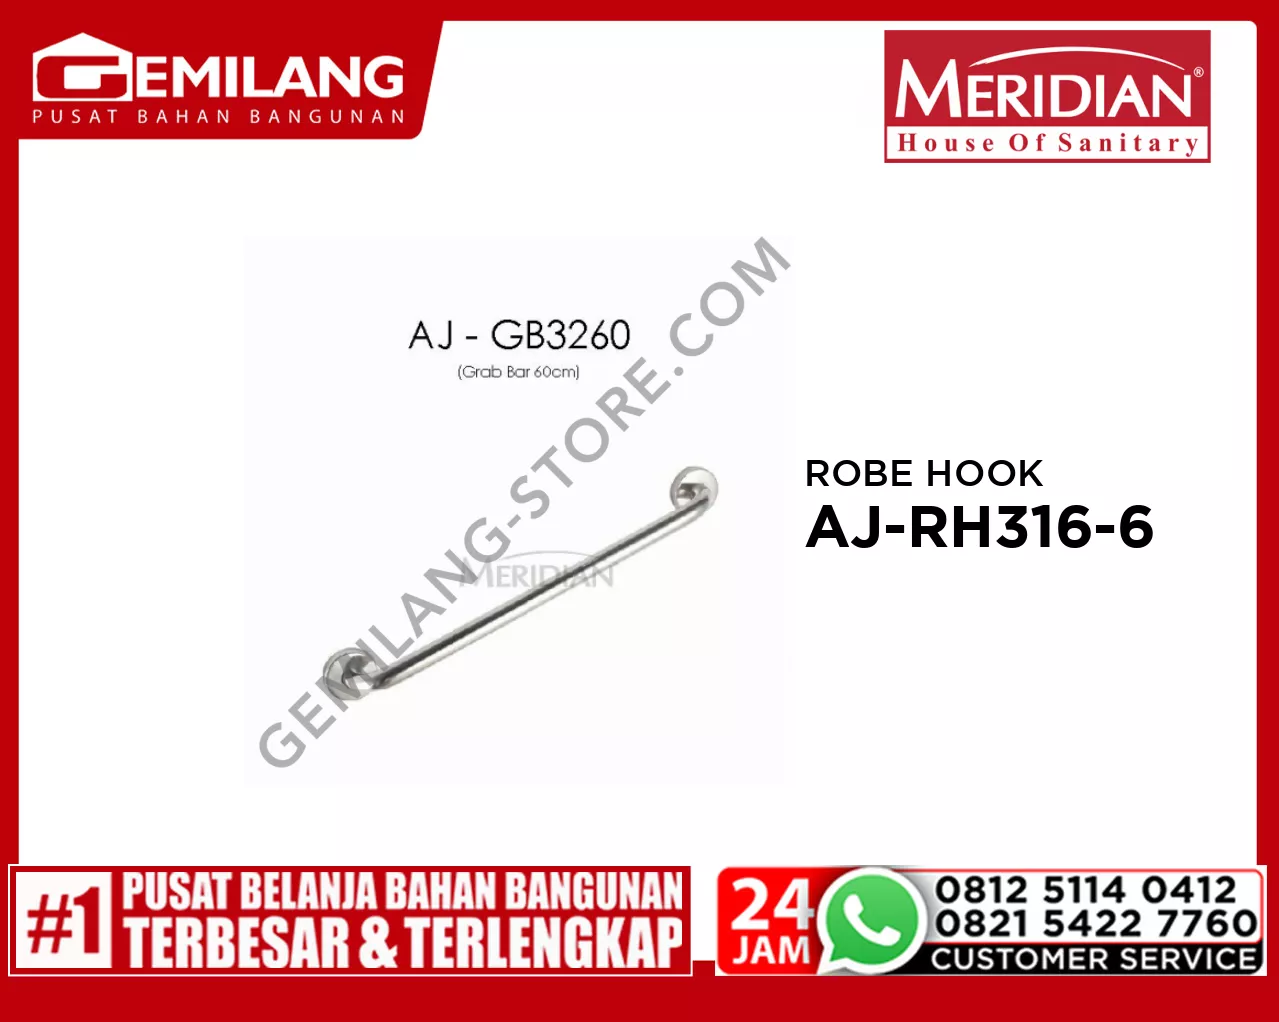 MERIDIAN GRAB BAR 60cm AJ-GB3260